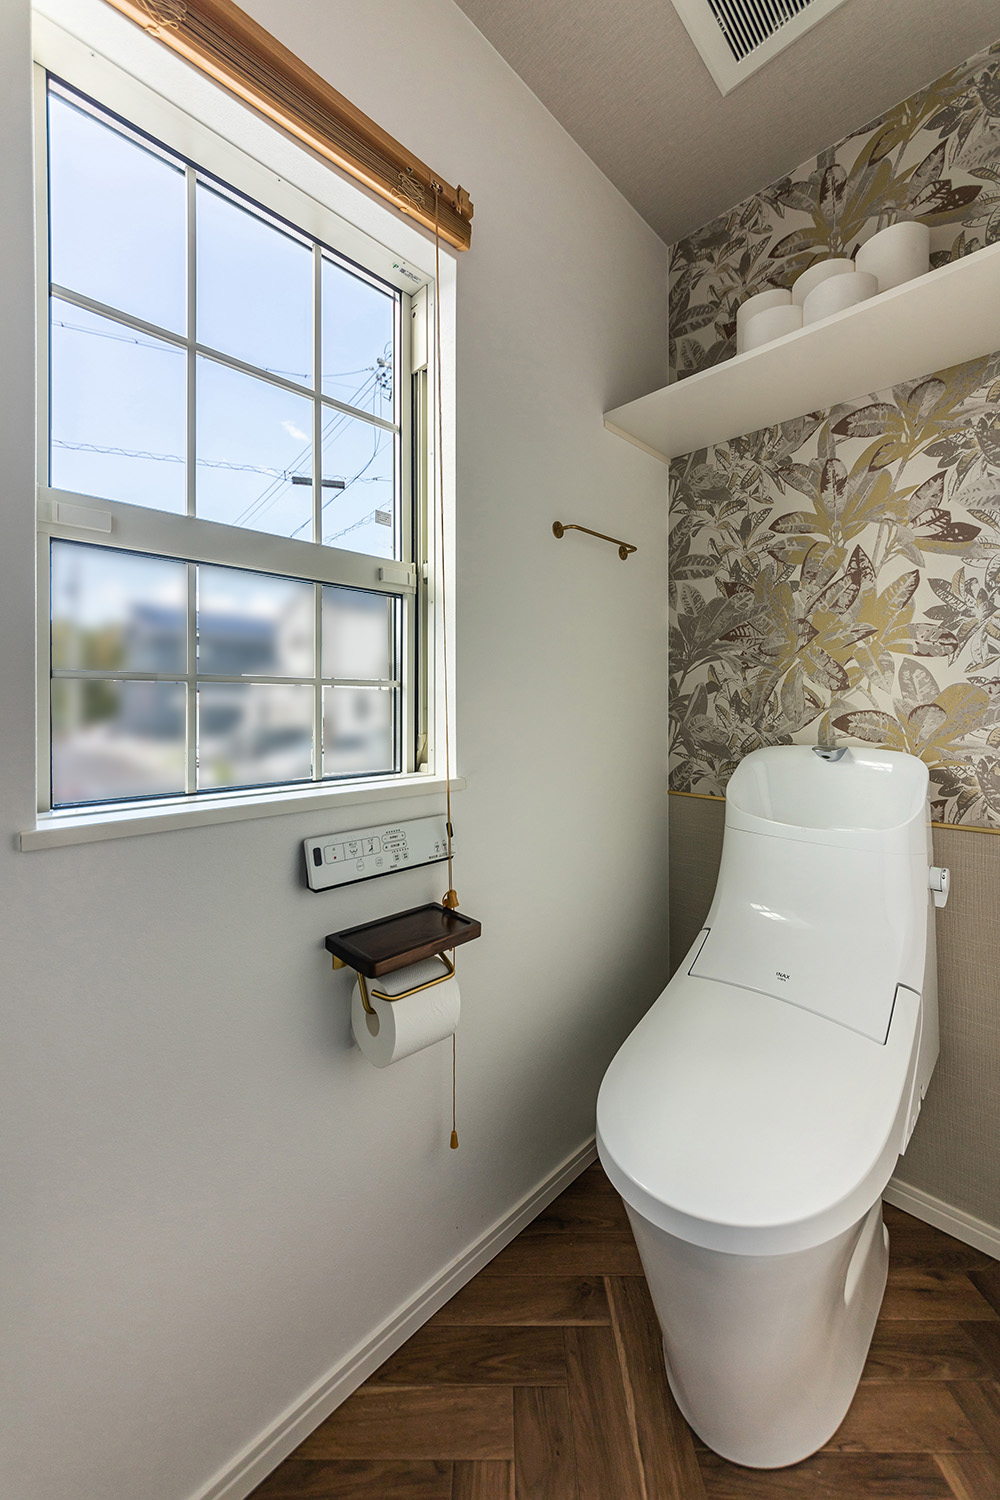 ヘリンボーン柄の床とボタニカル柄のアクセントクロスが目を惹くトイレ。<br />
上げ下げ窓から差し込む優しい光が、開放的な雰囲気を演出してくれます